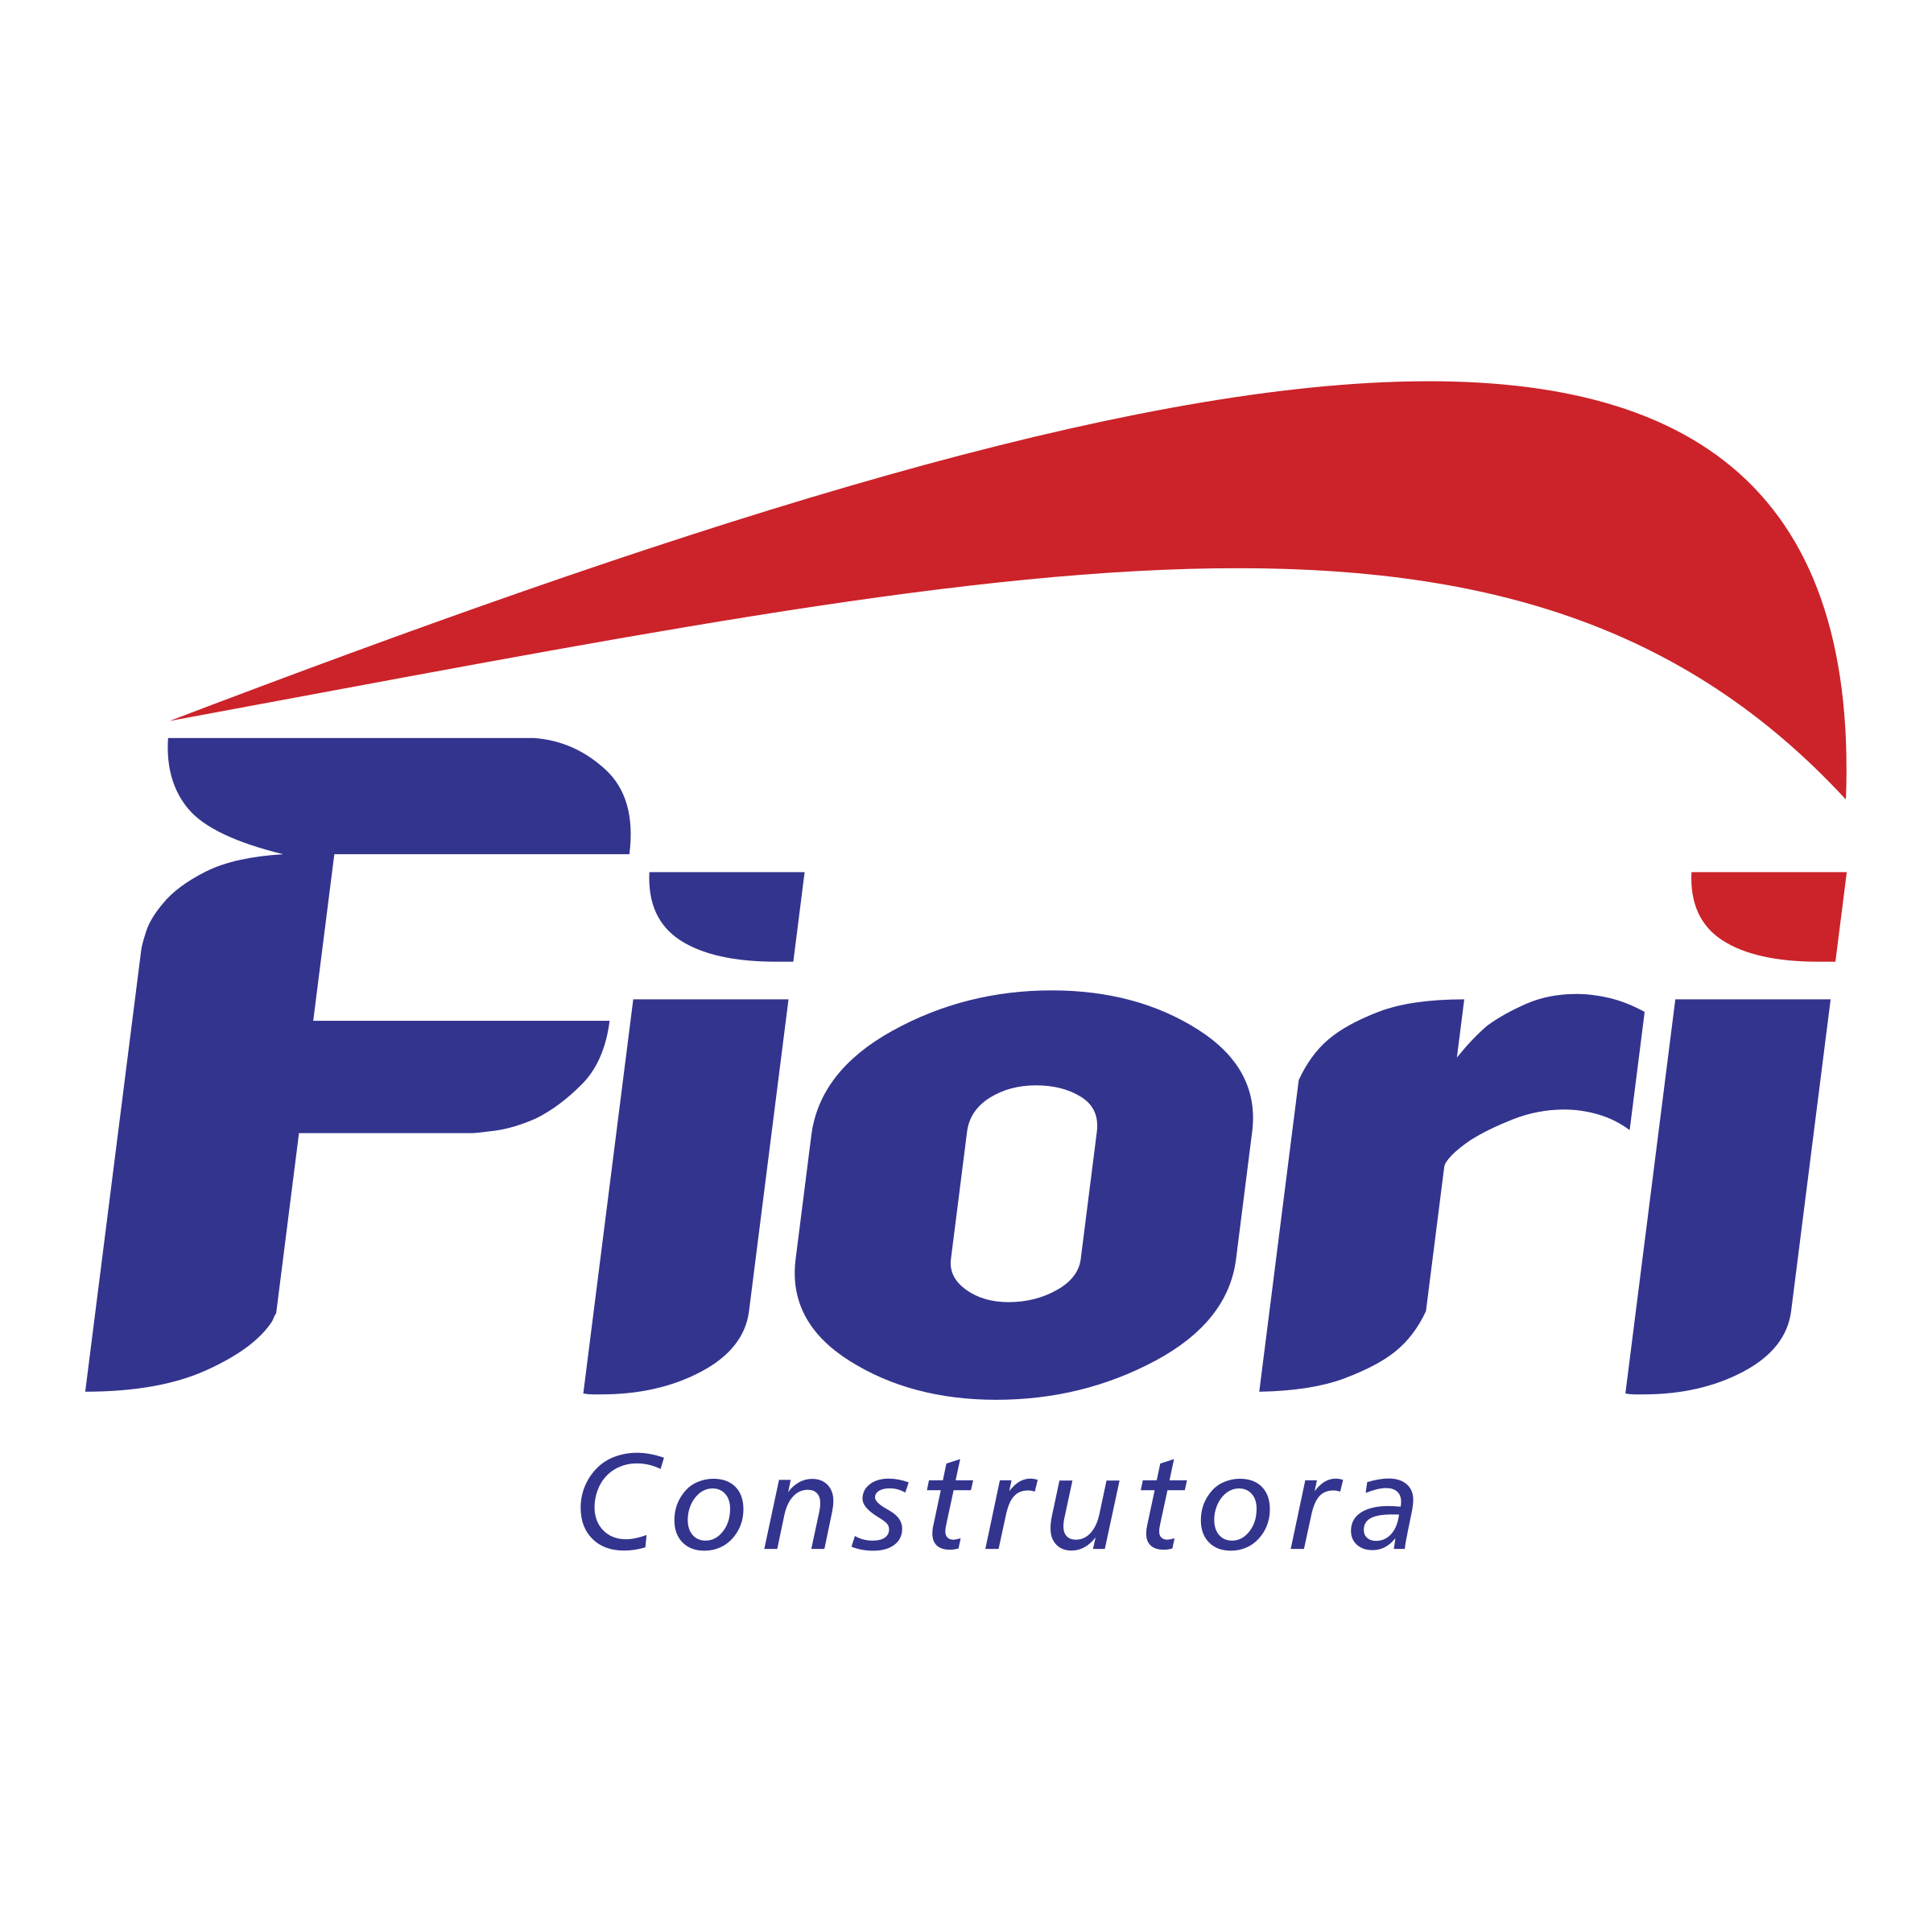 Fiori Logo - Fiori Construtora Logo PNG Transparent & SVG Vector - Freebie Supply